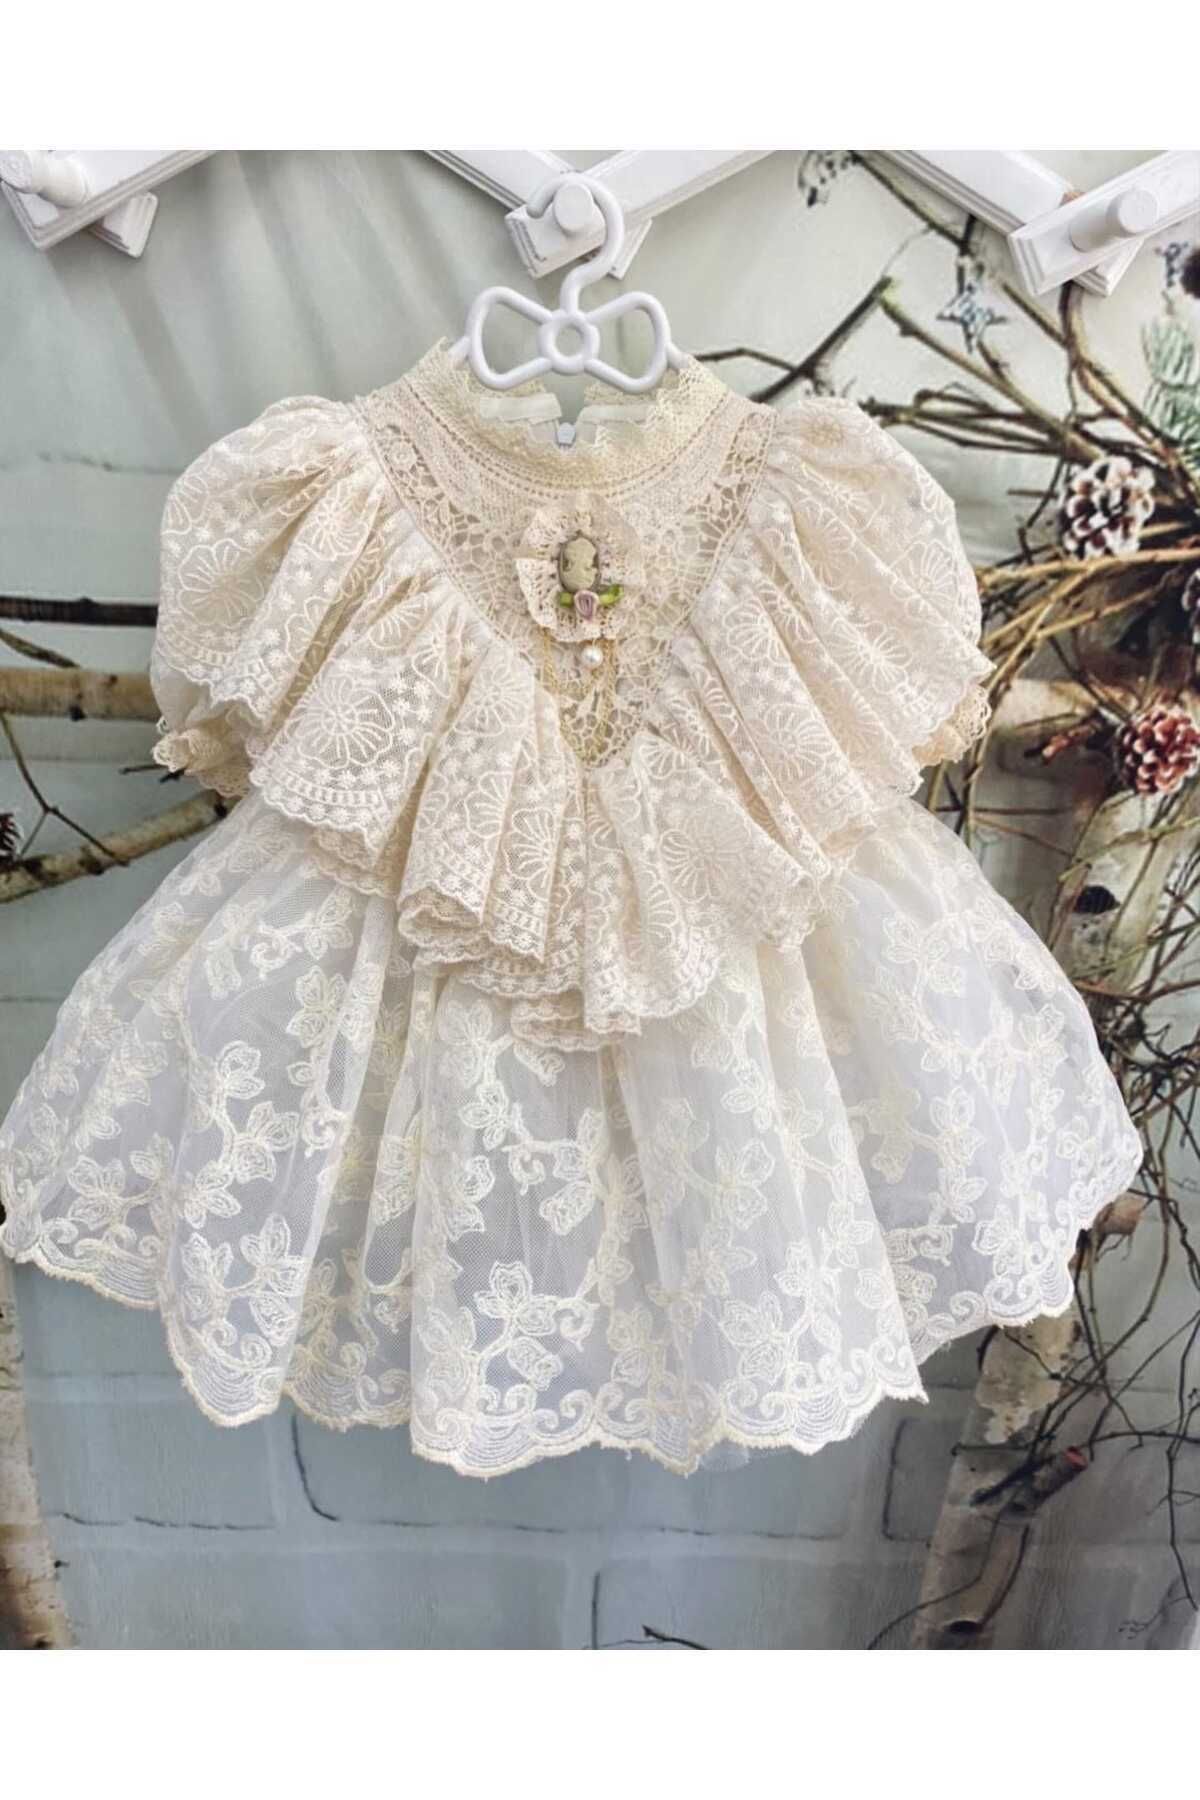 Hly Karol Tasarım Prenses Kız Bebek Elbisesi, Özel Dikim Kız Çocuk Elbisesi, Doğum Günü & Fotoğraf Çekim